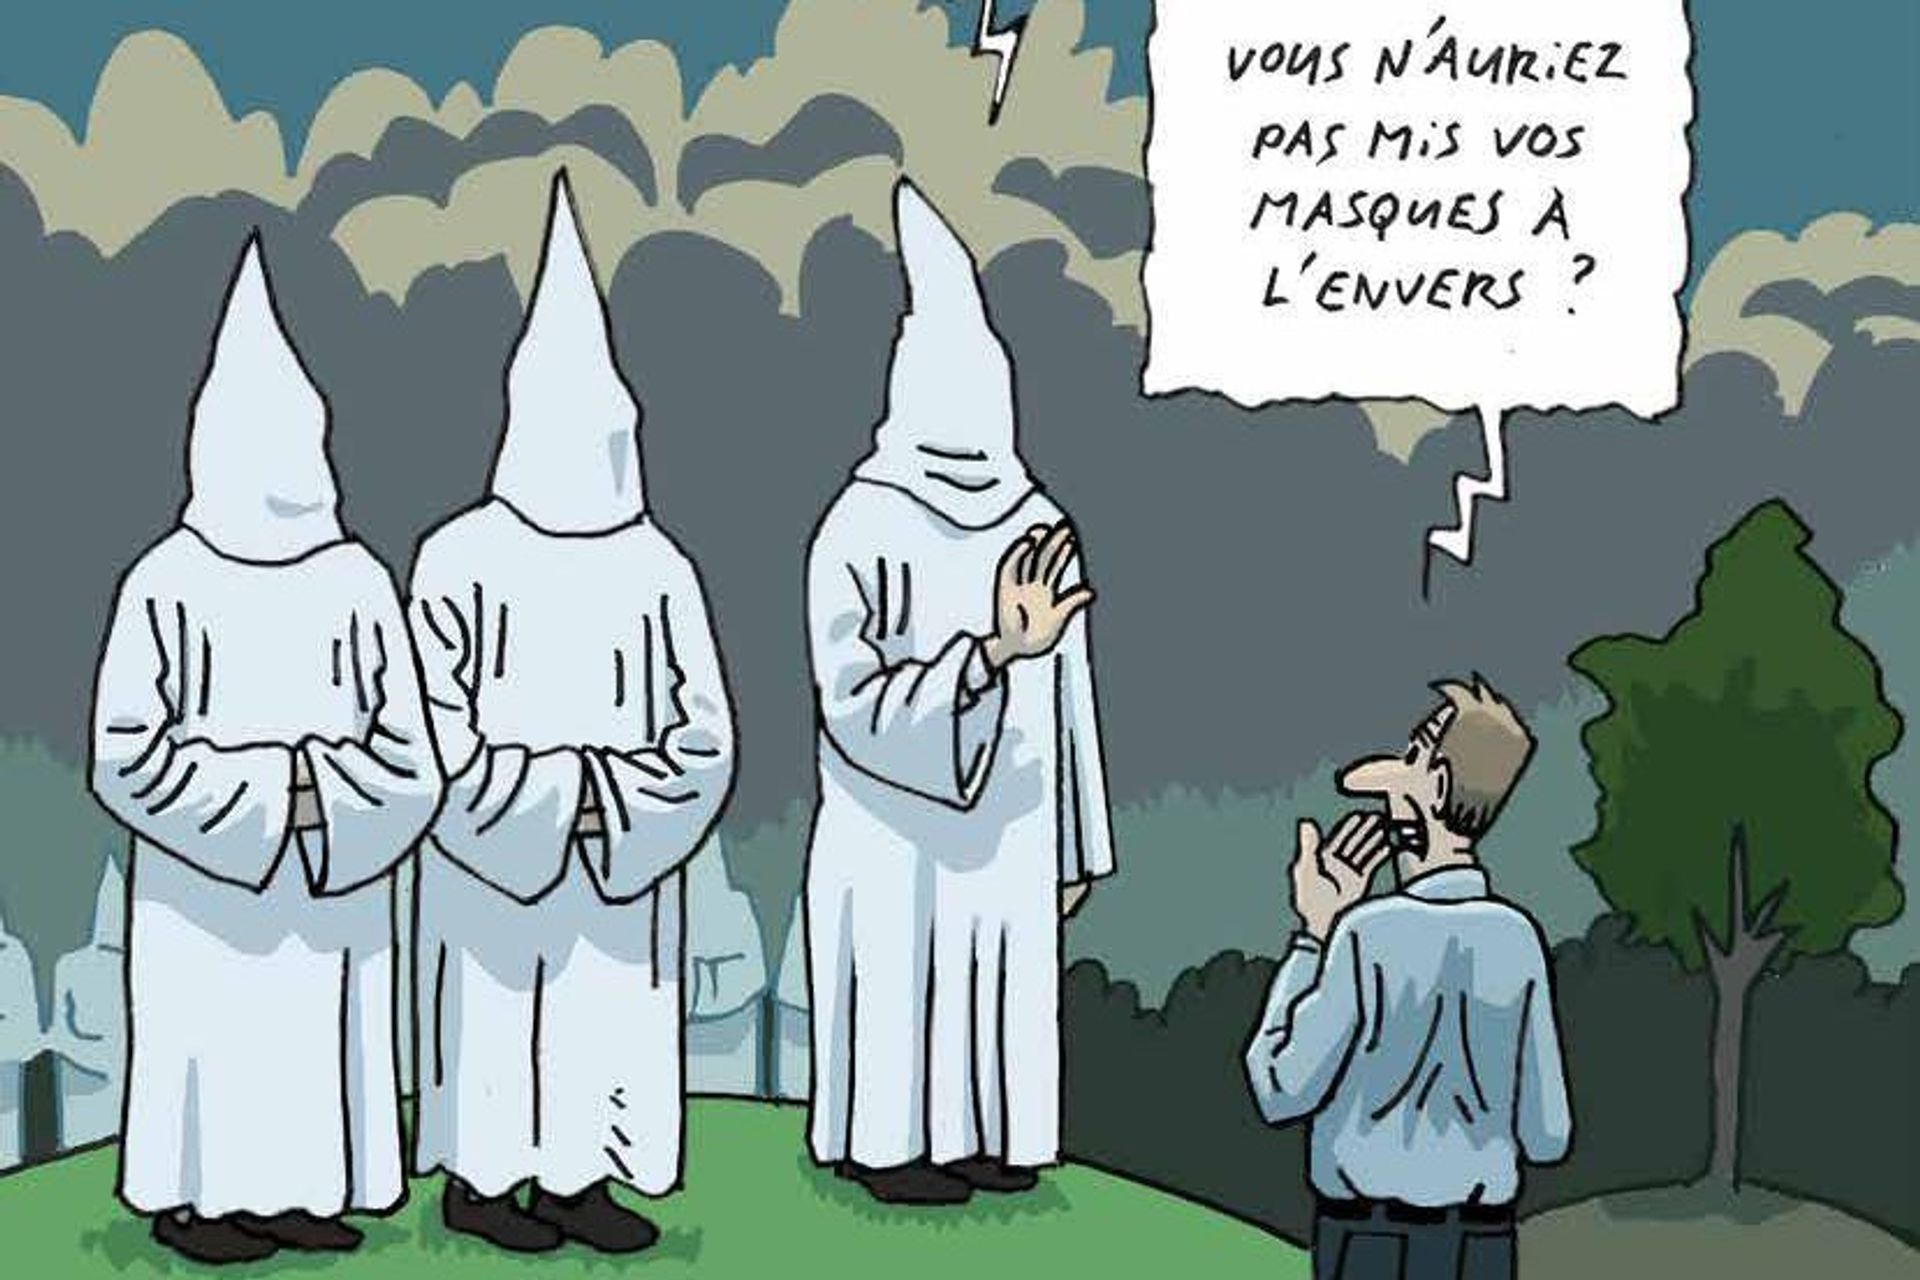 Један од карикатура о ксенофобији, лажним вестима и завери у броју 45-2021 часописа Швајцарске савезне комисије против расизма